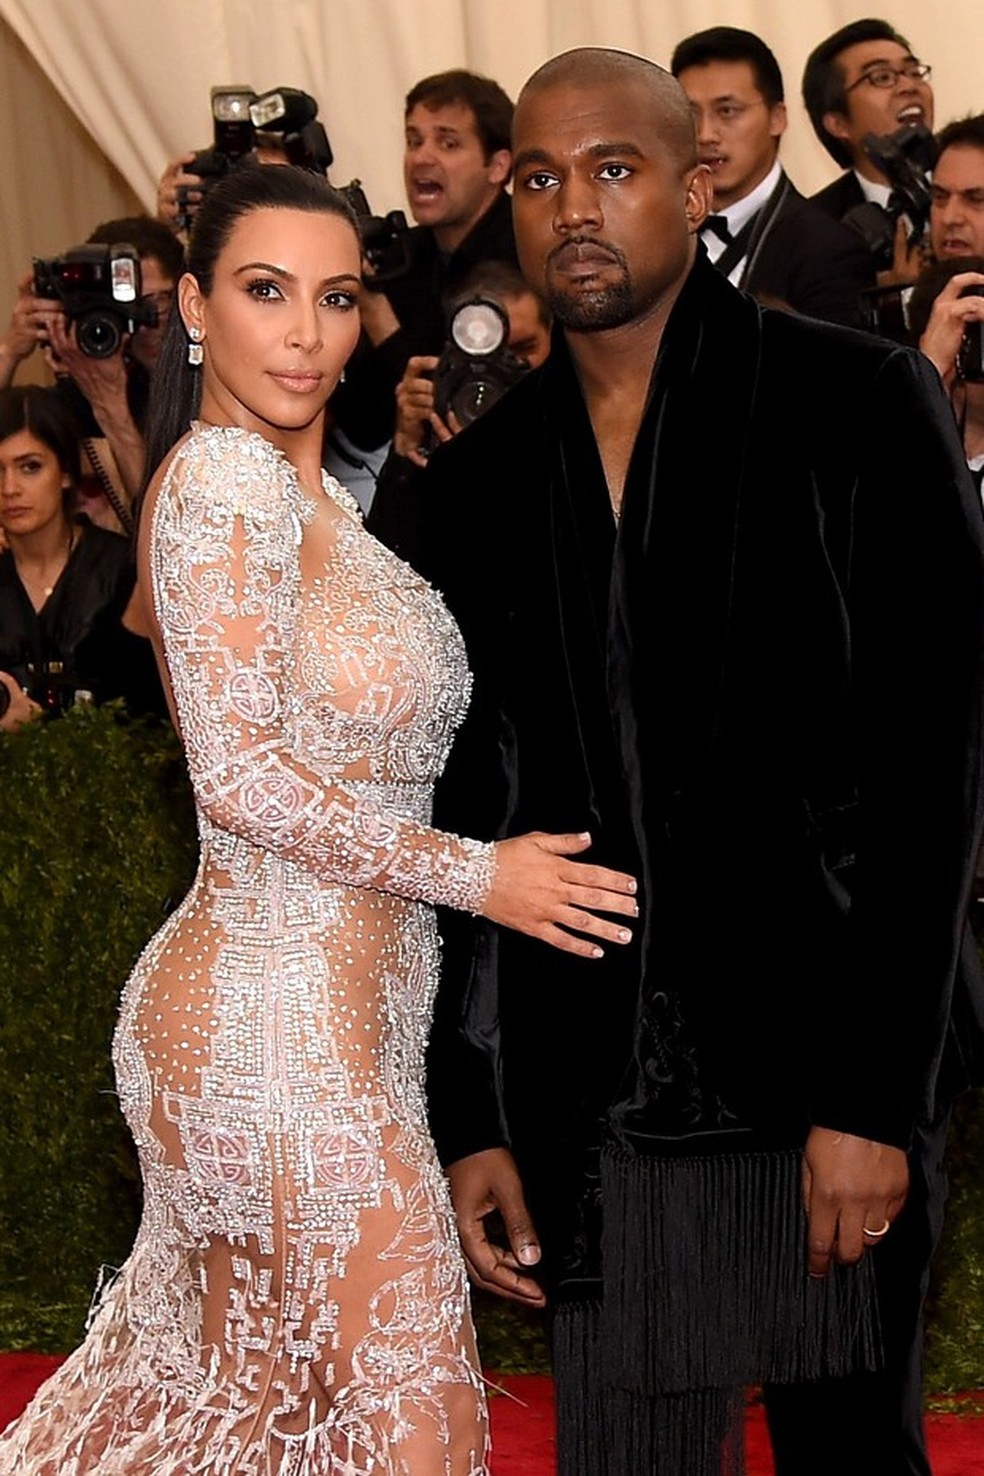 Kim Kardashian é traída por legging apertada demais, Celebridades